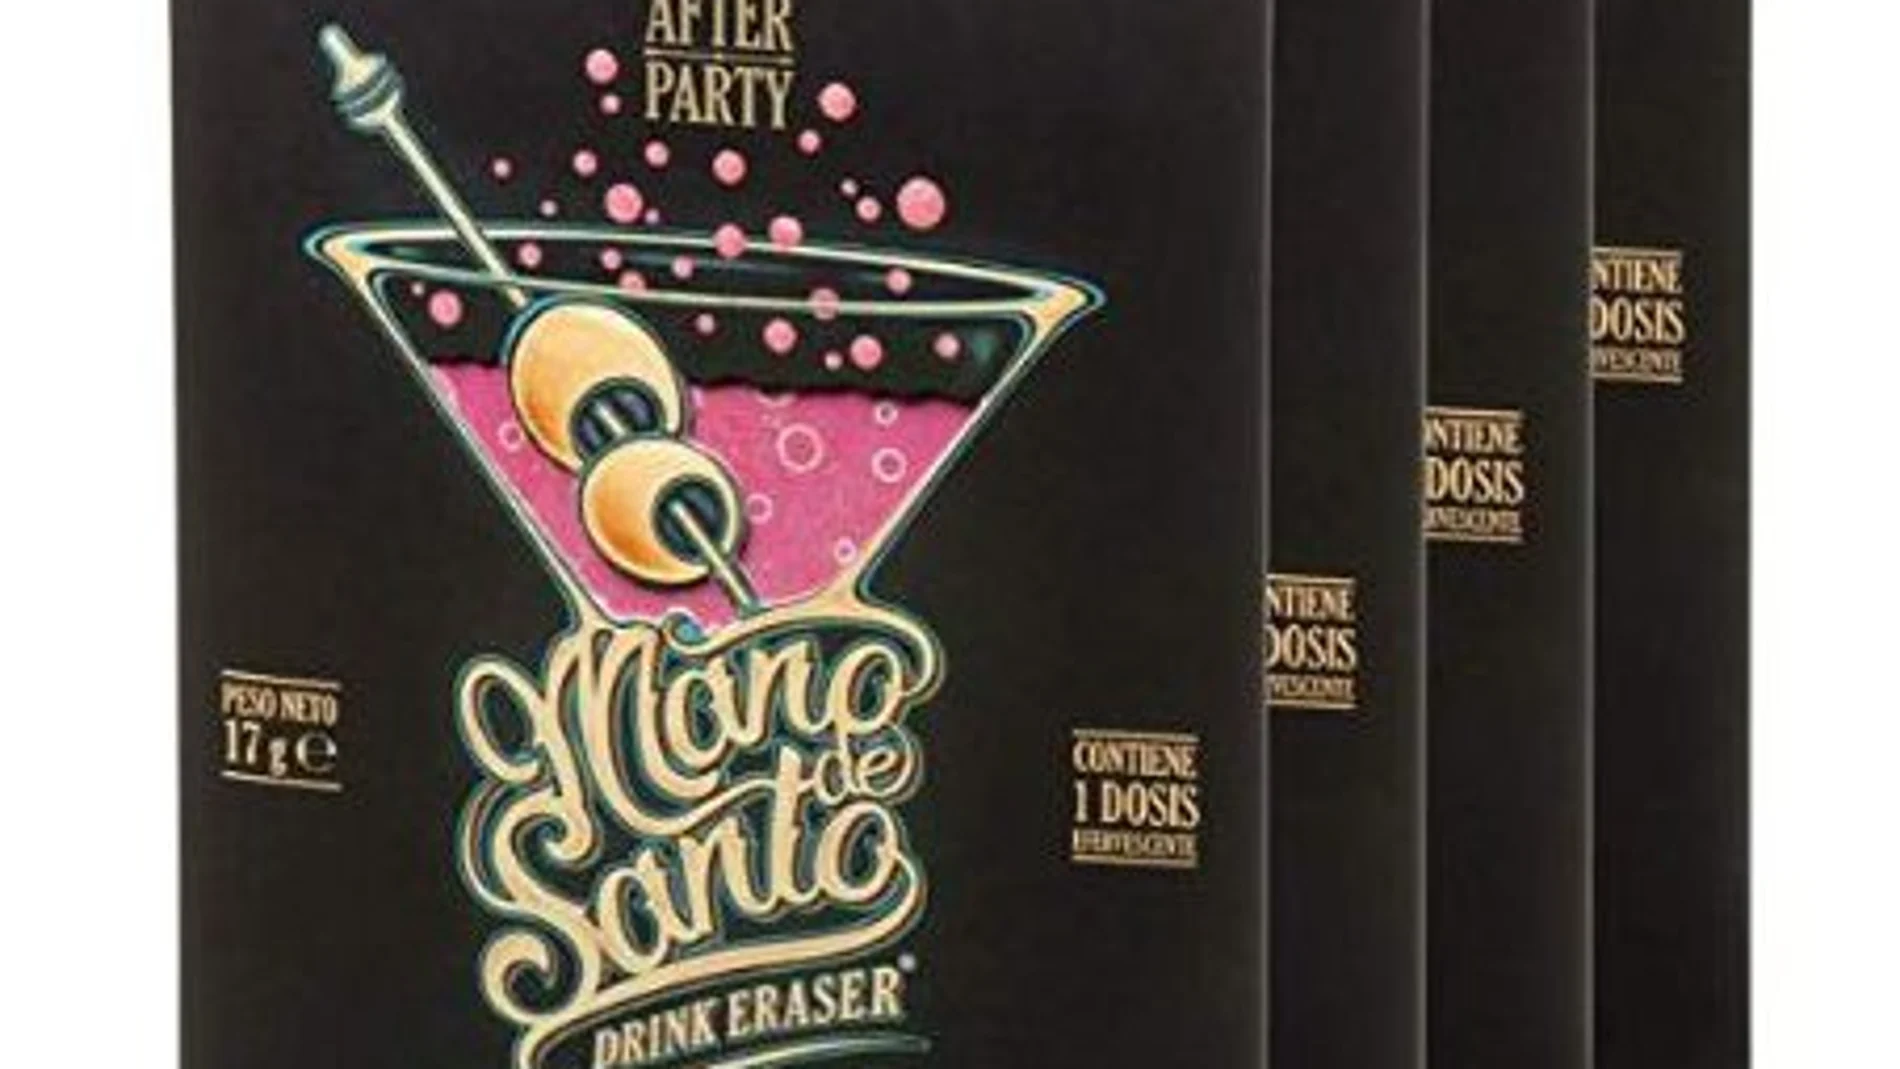 El kit «Drink Eraser 'Mano de Santo' Stop Resaca» se vende a través de una conocida plataforma de compras por un precio de 15,99 euros el «pack» de cuatro dosis efervescentes